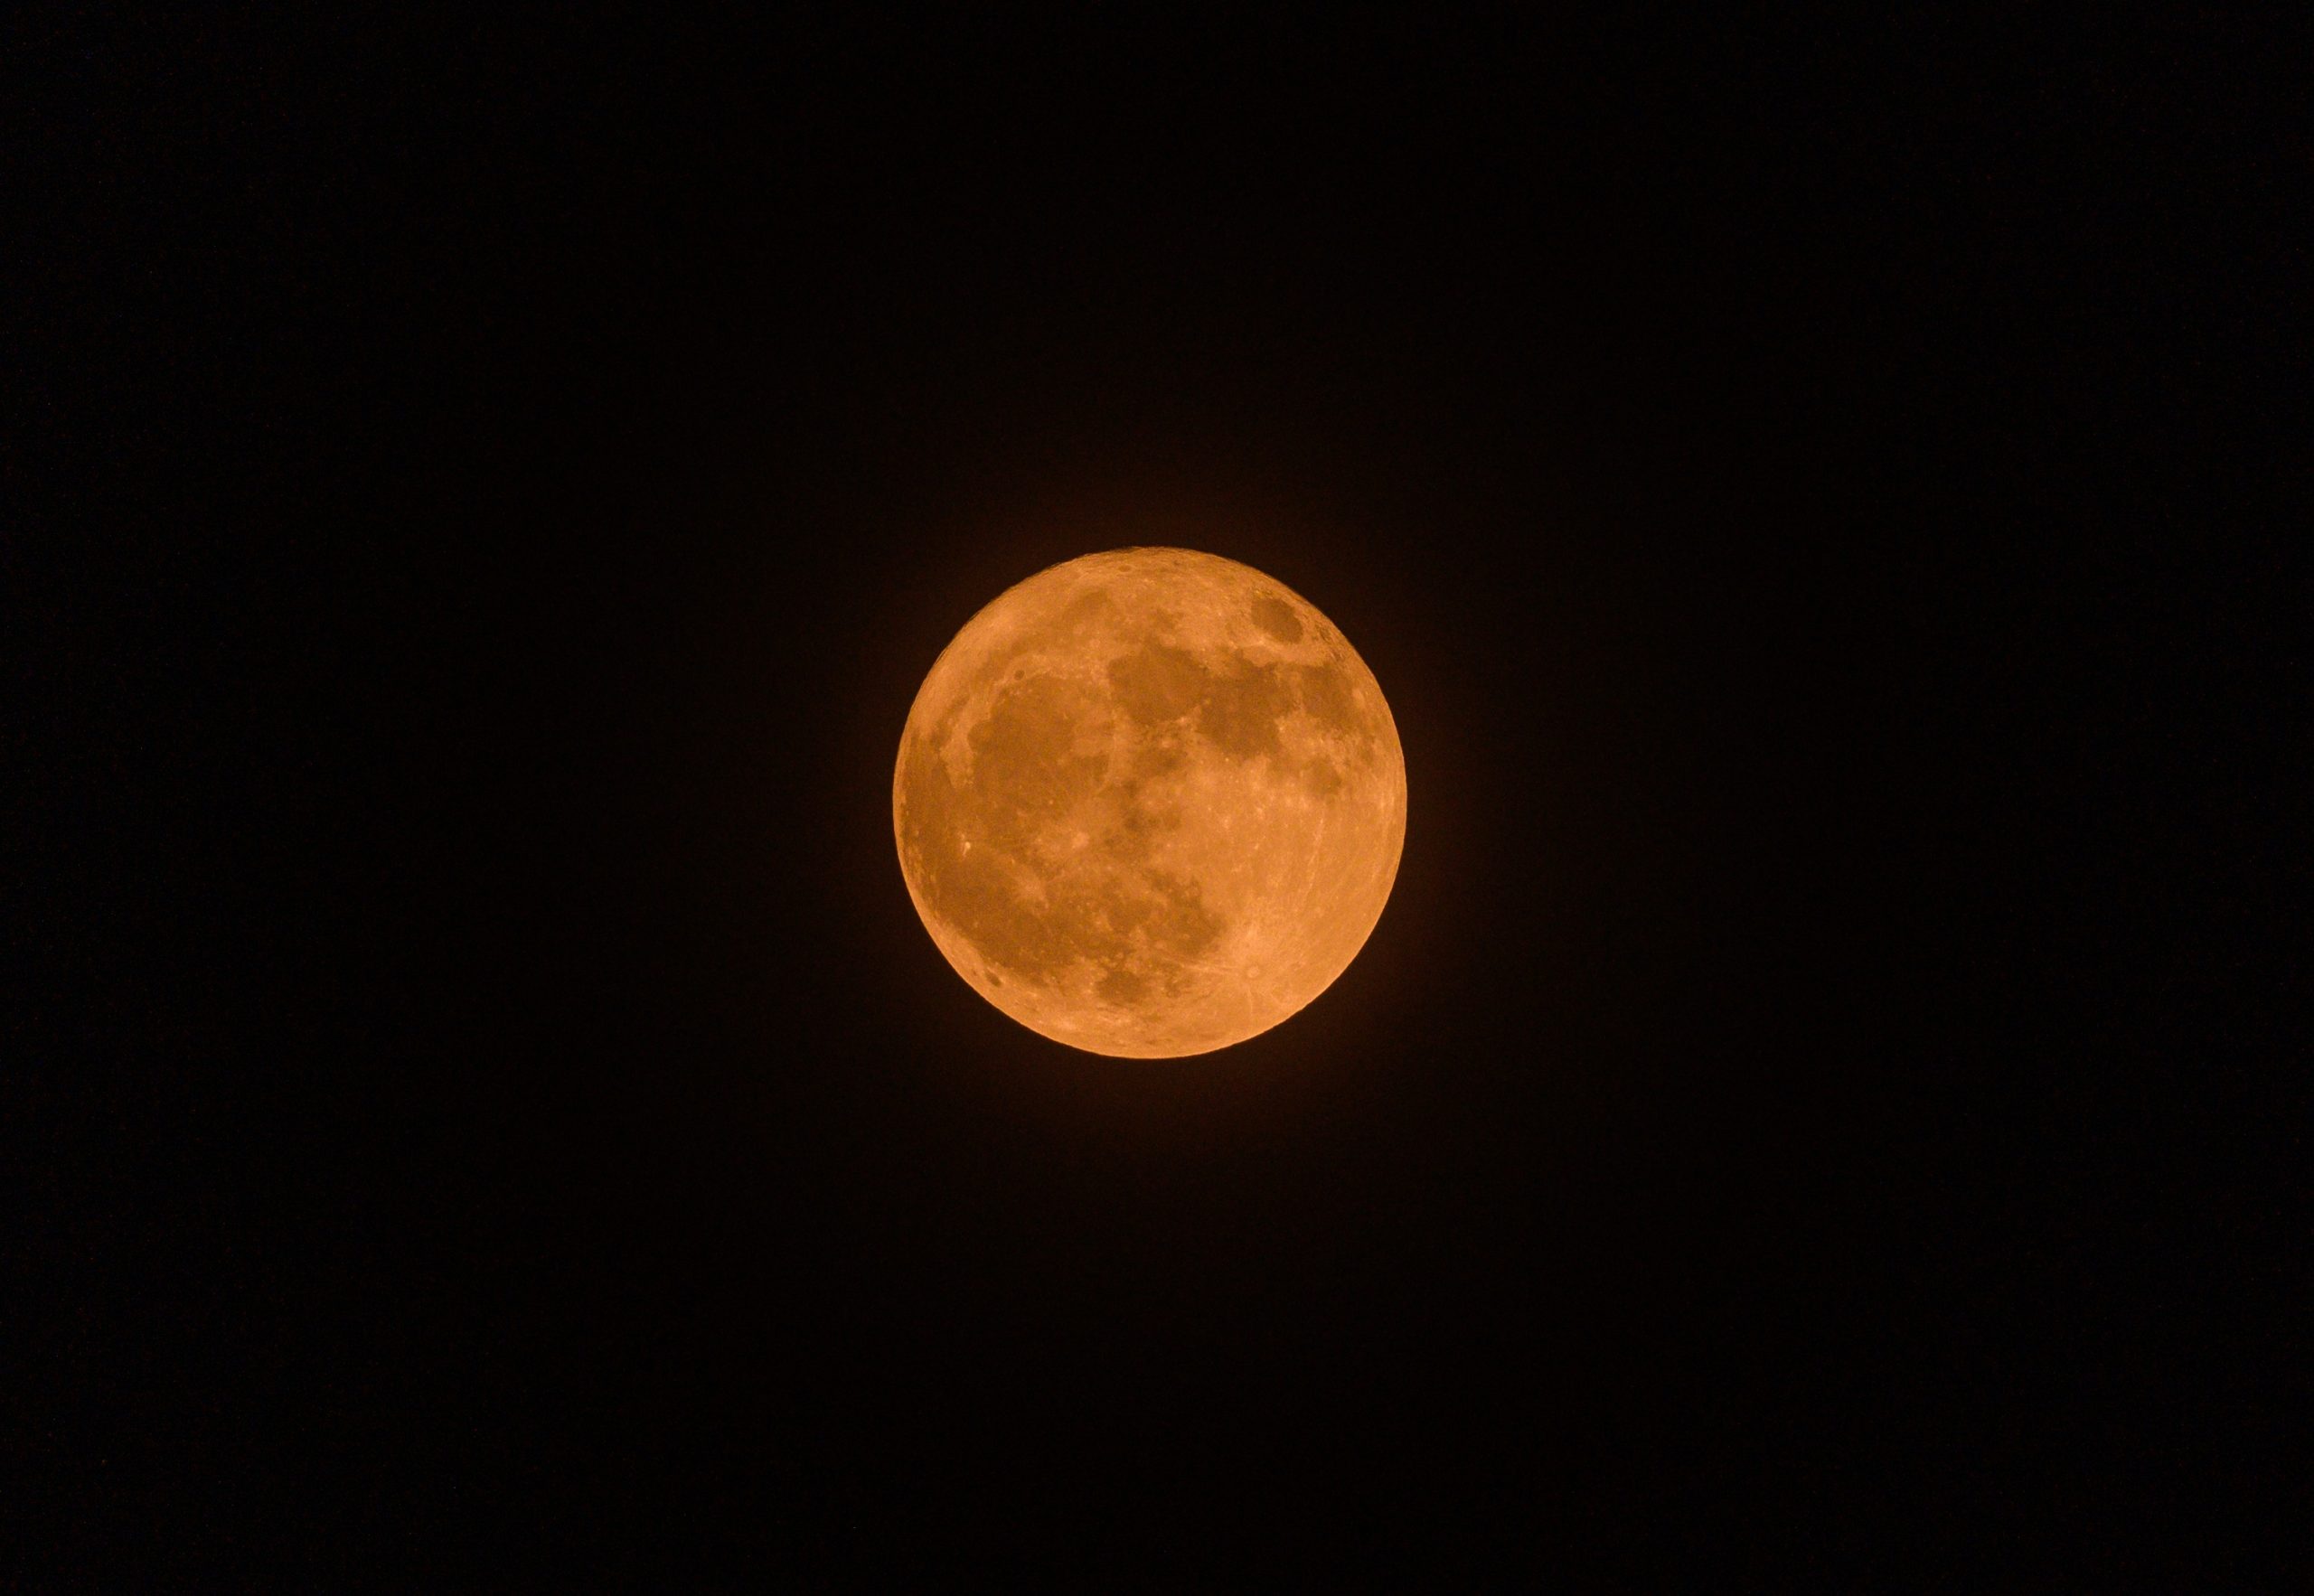 Az indiai Tehattából is látványos volt a jelenség. Közelségének köszönhetően 7 százalékkal tűnt nagyobbnak, ezáltal fényesebbnek a Hold. (Kép: Soumyabrata Roy/NurPhoto via Getty Images)